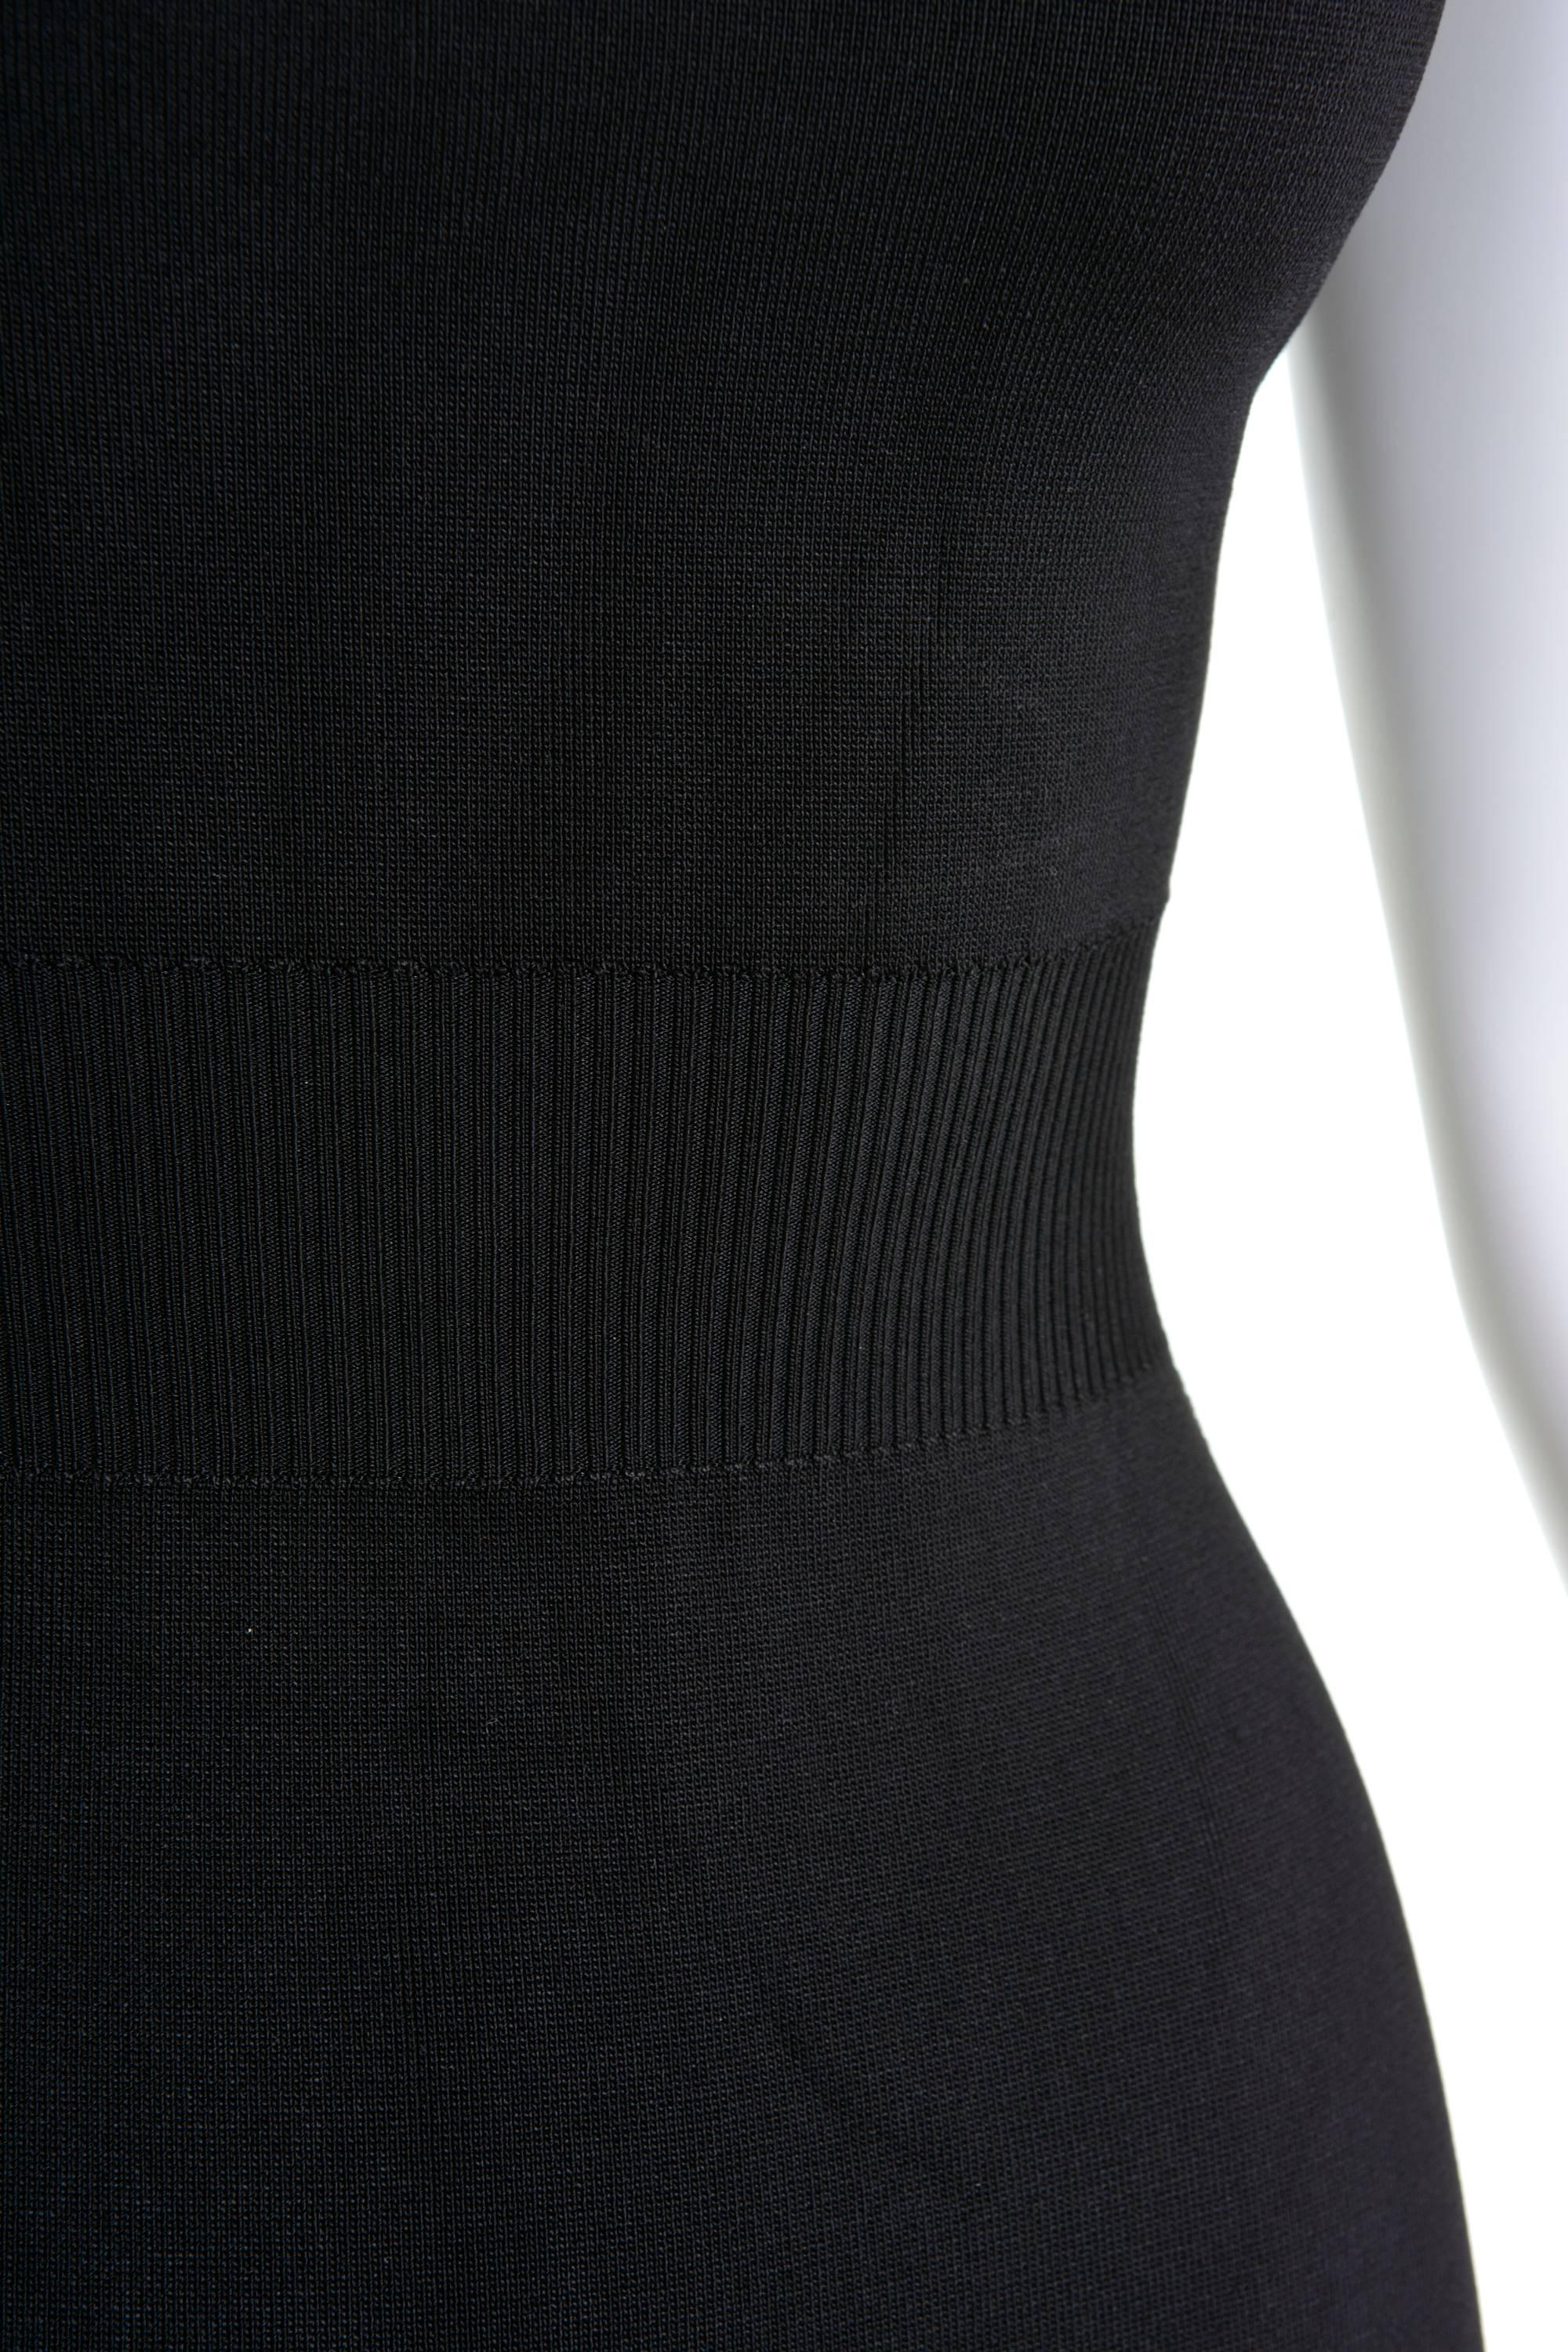 Women's 1990s Alaïa Black Mini Dress